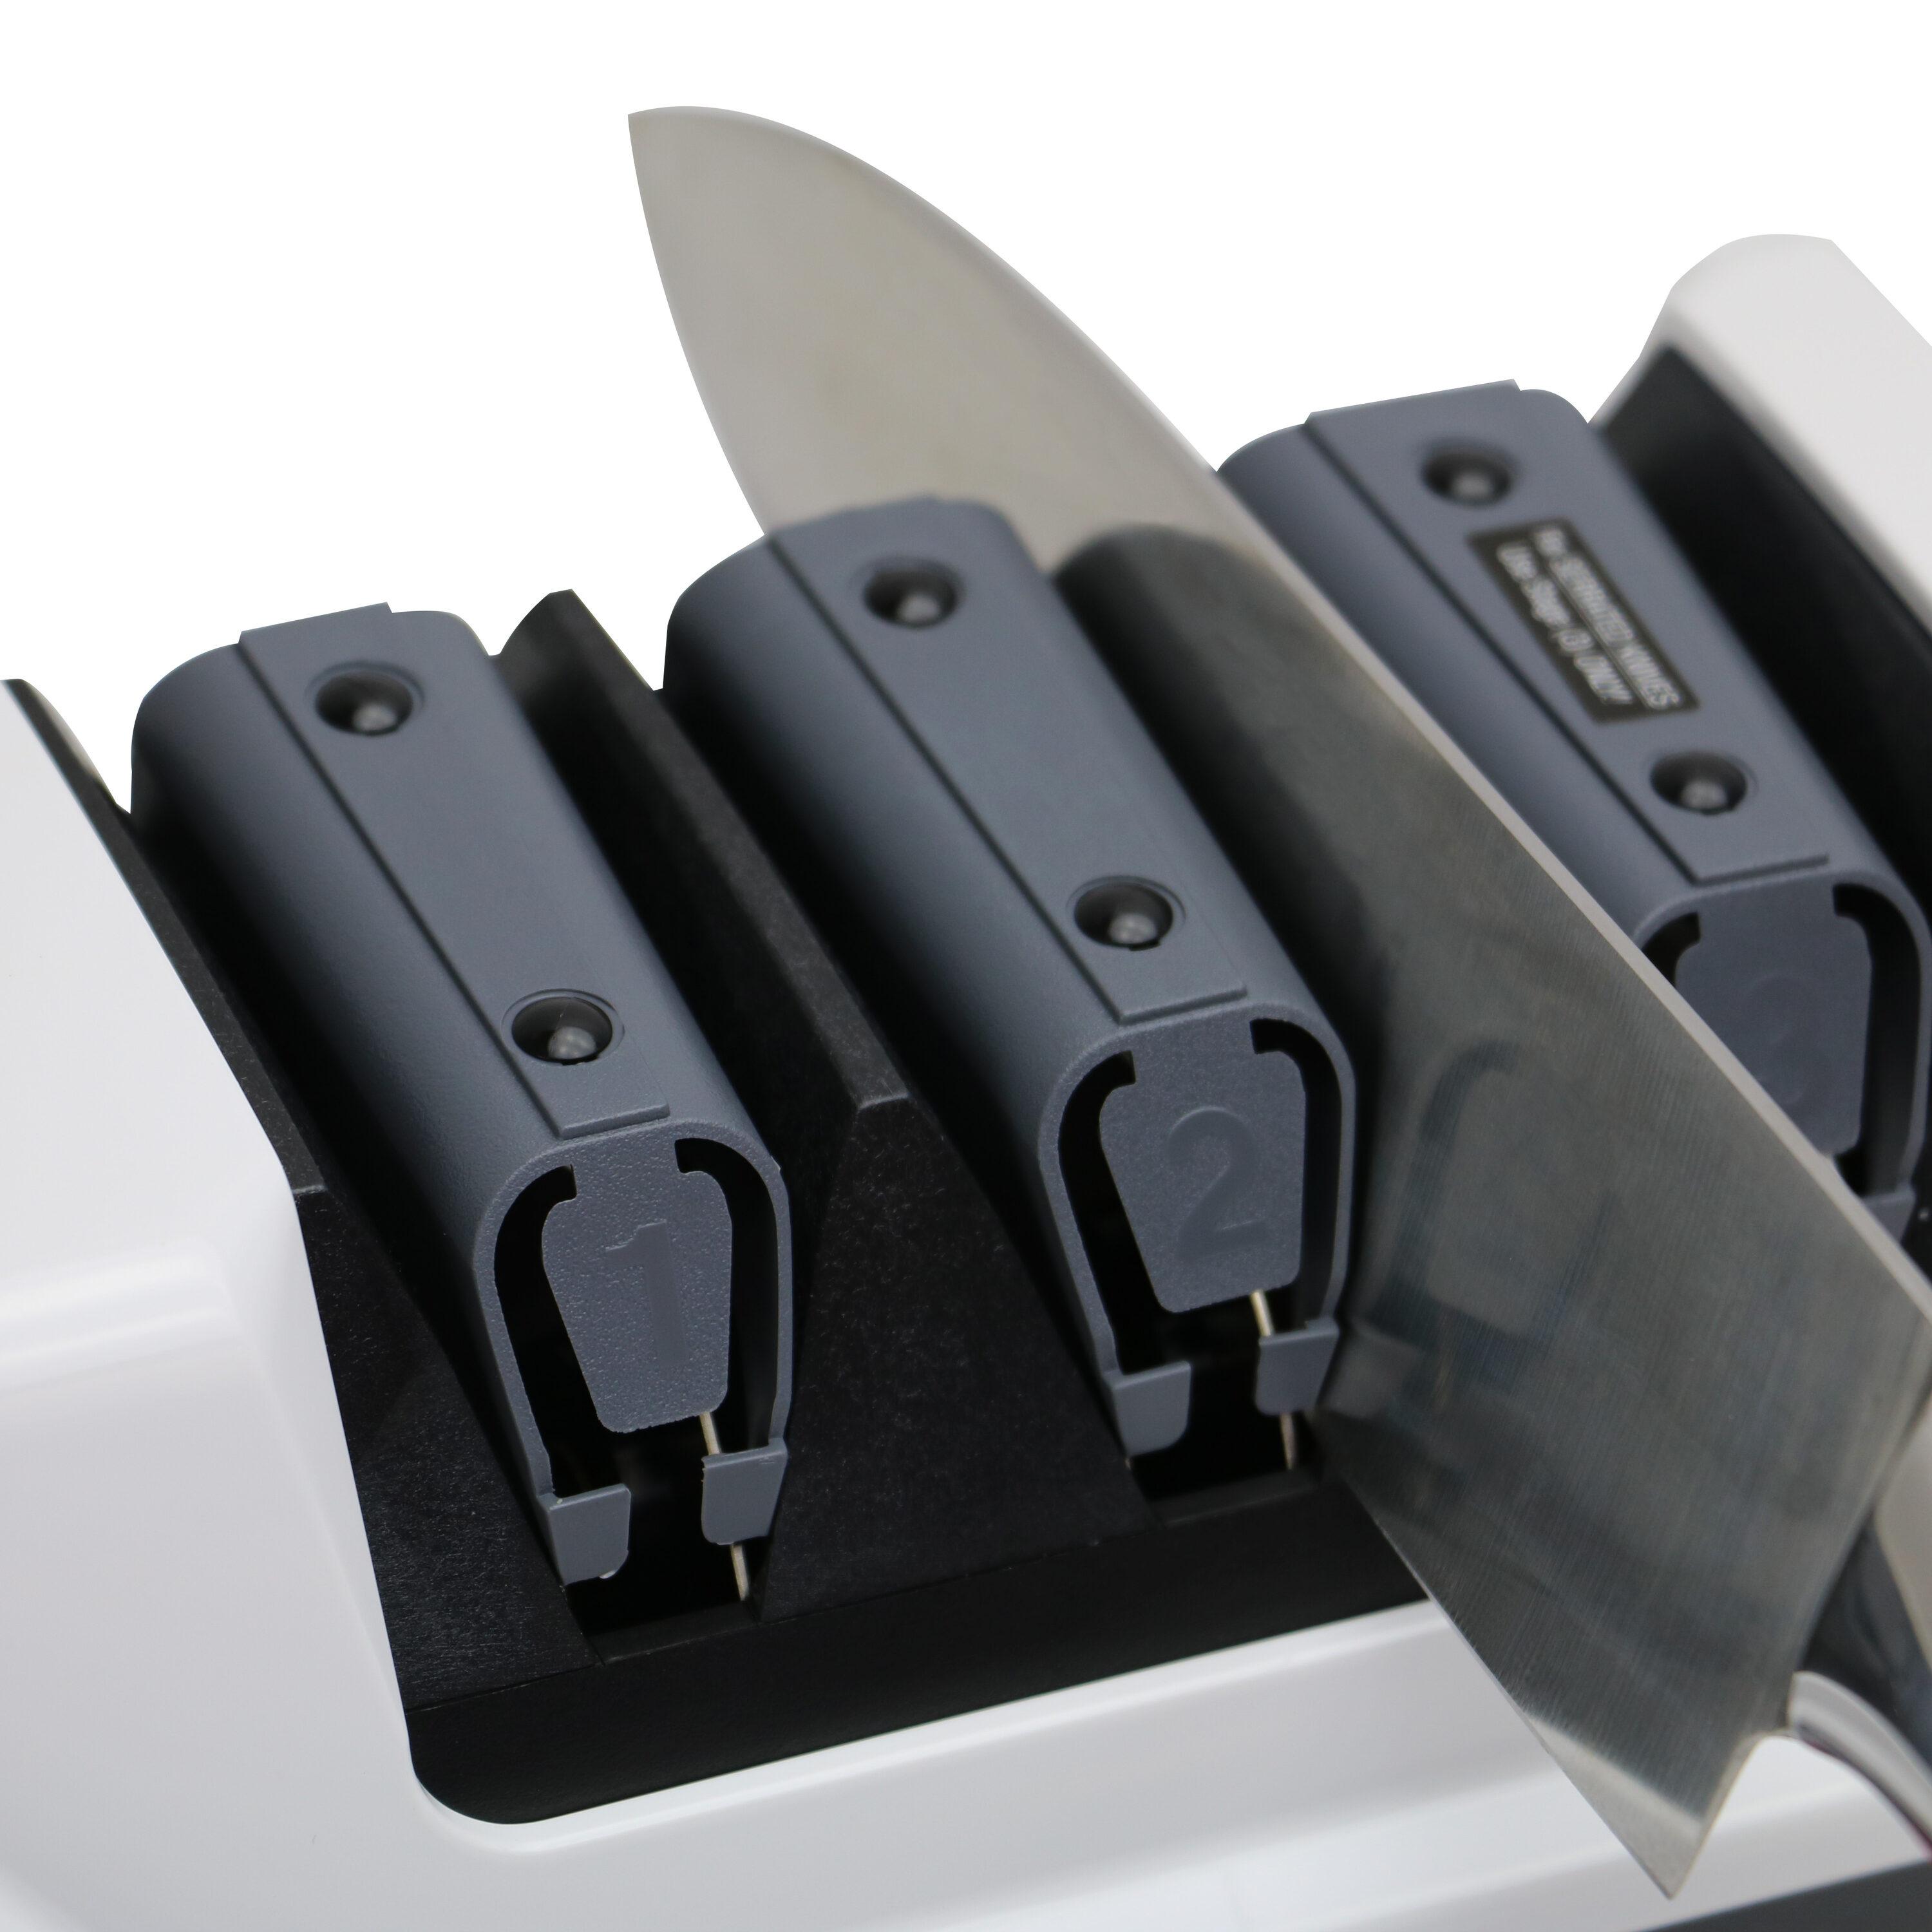 Diamond Hone® EdgeSelect® Model 120 electric knife sharpener